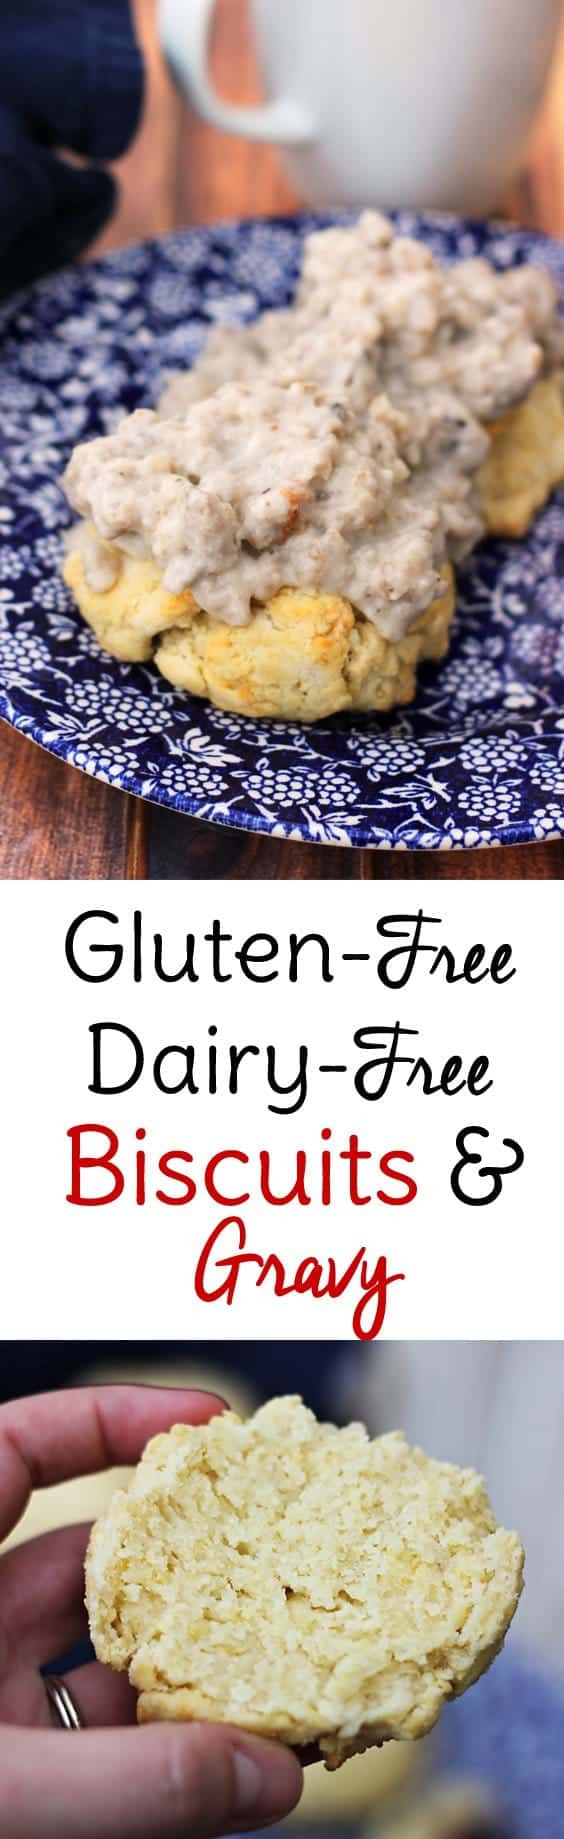 Gluten Free Biscuits And Gravy
 Gluten Free Biscuits and Gravy Recipe